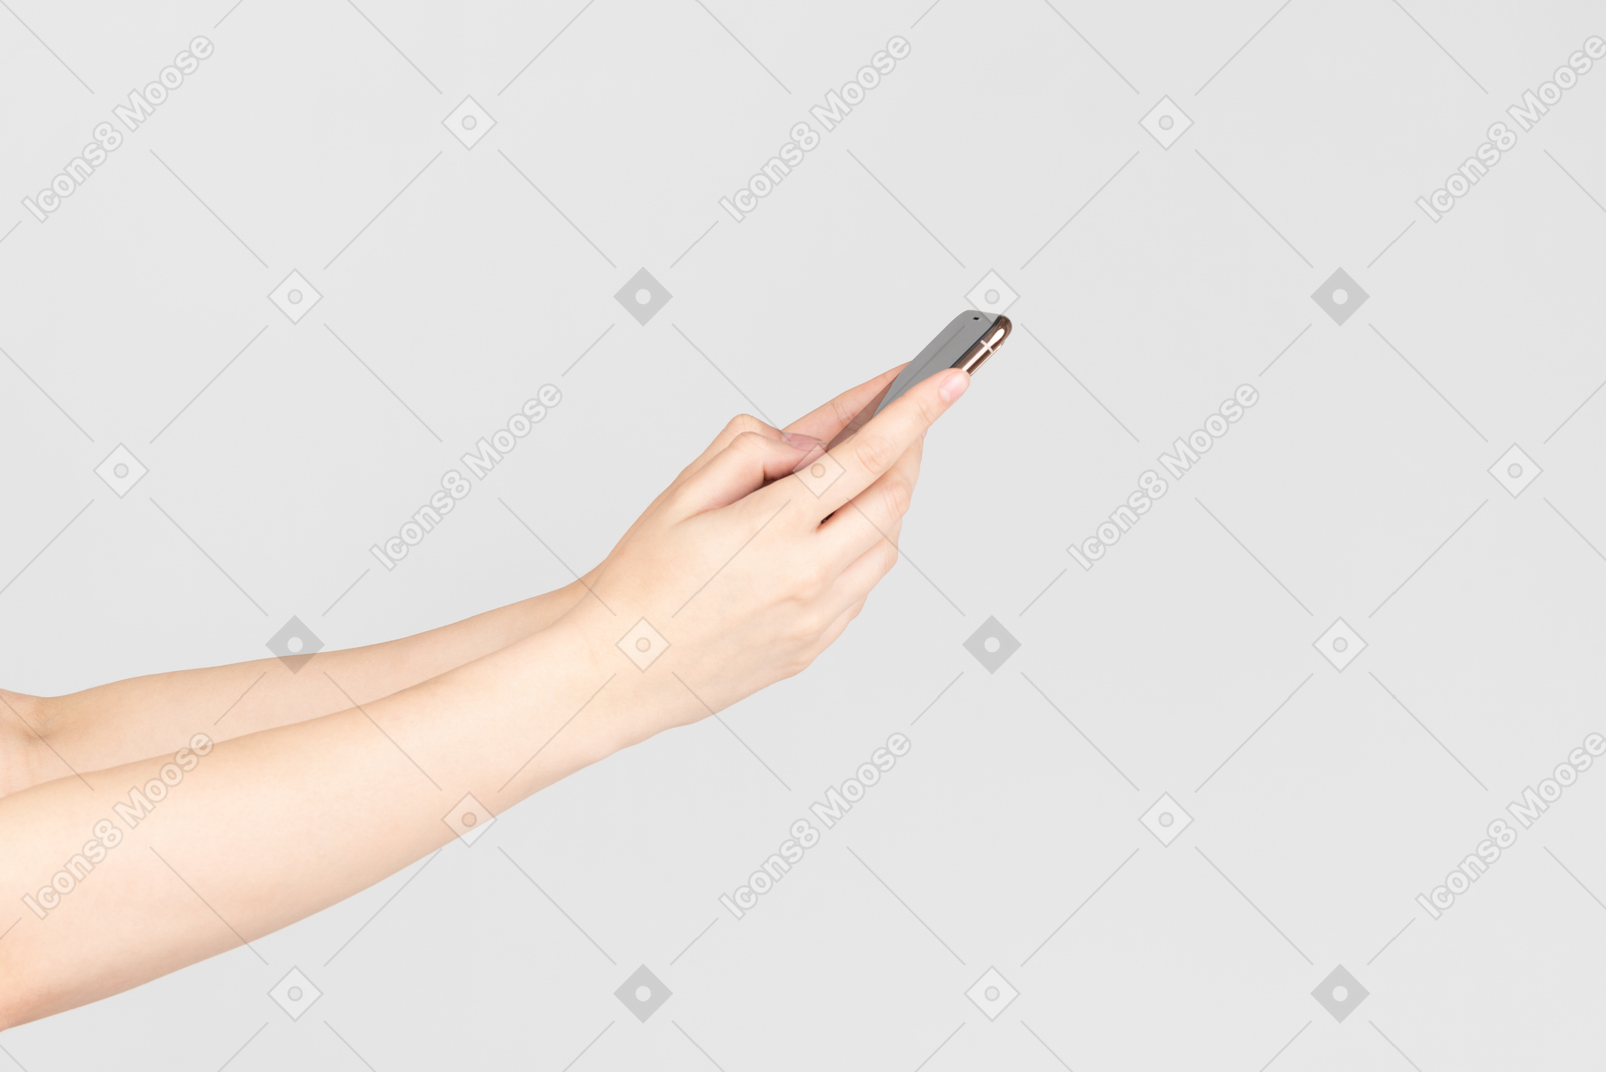 Weibliche hände halten smartphone